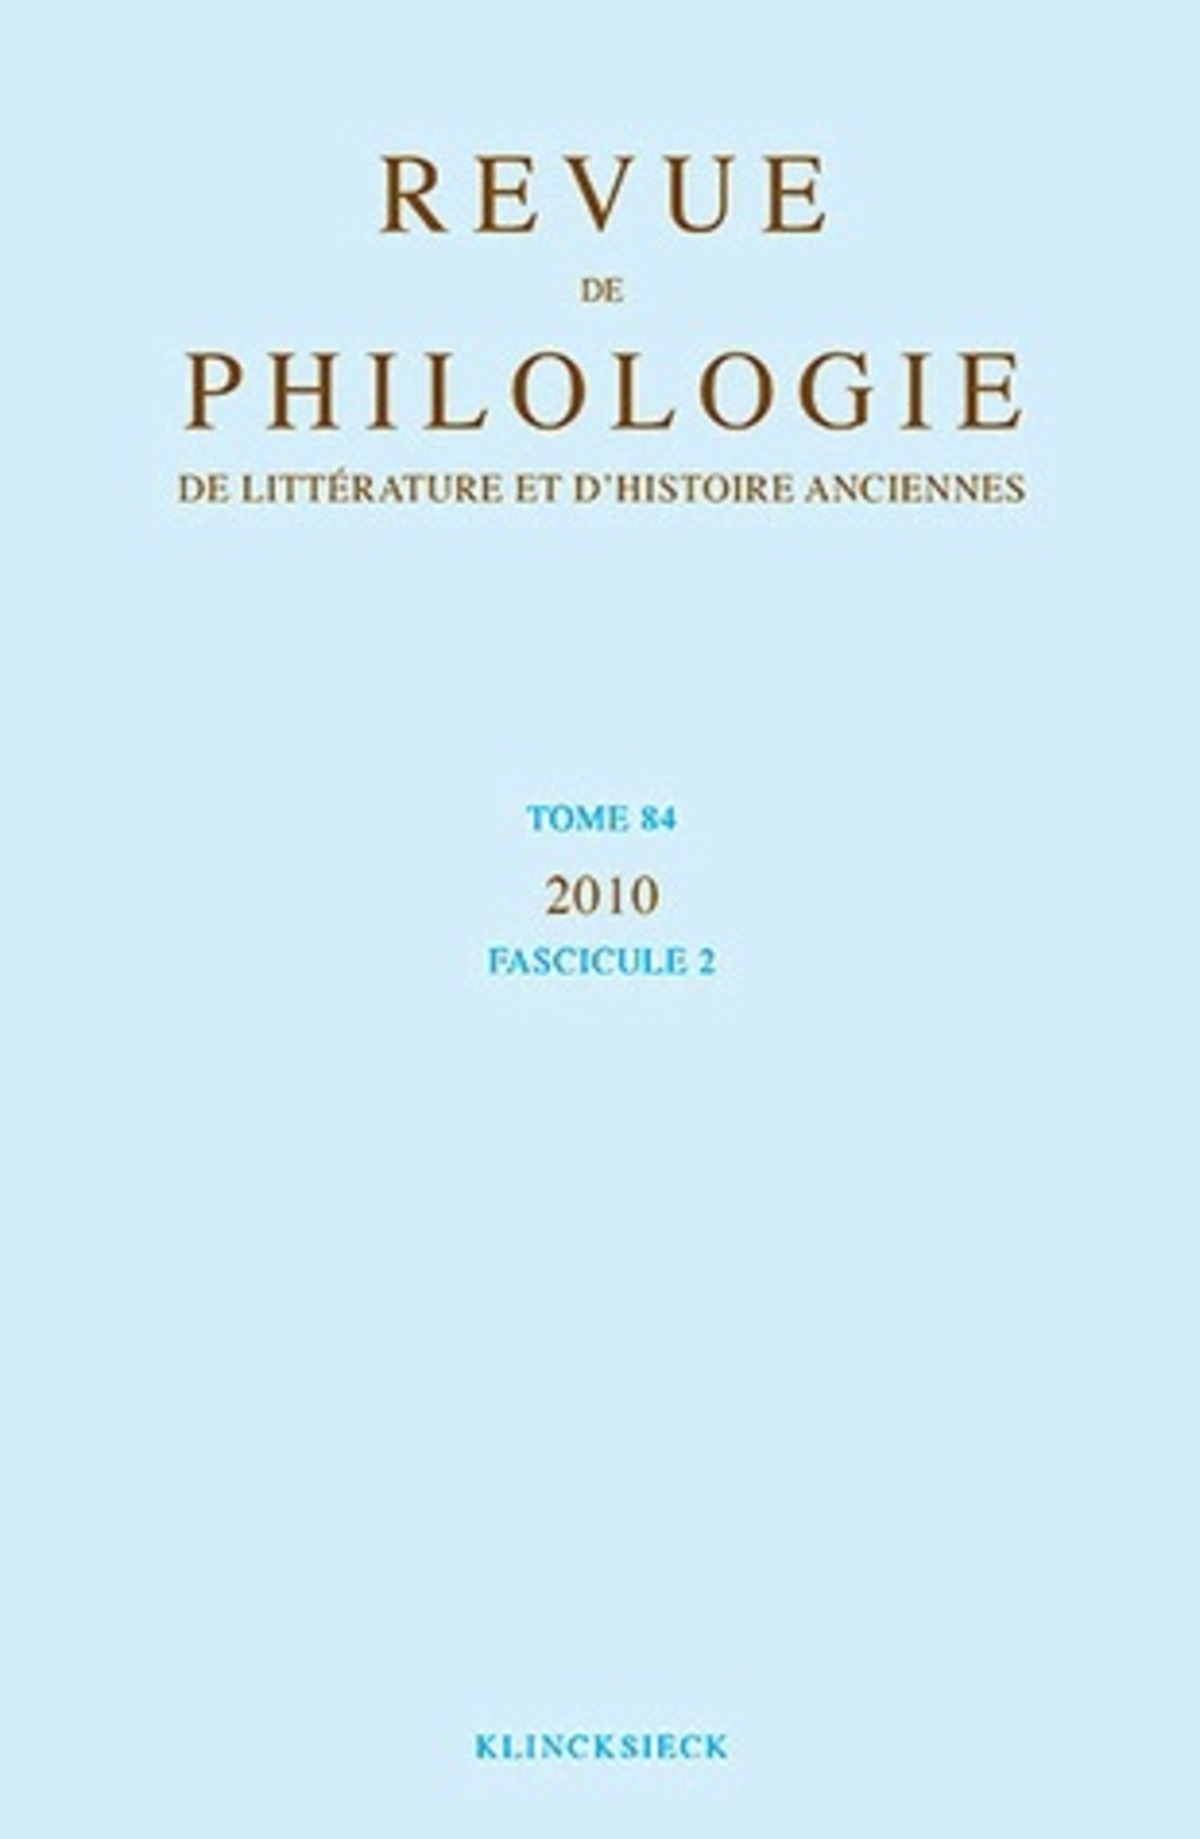 Revue de philologie, de littérature et d'histoire anciennes volume 84